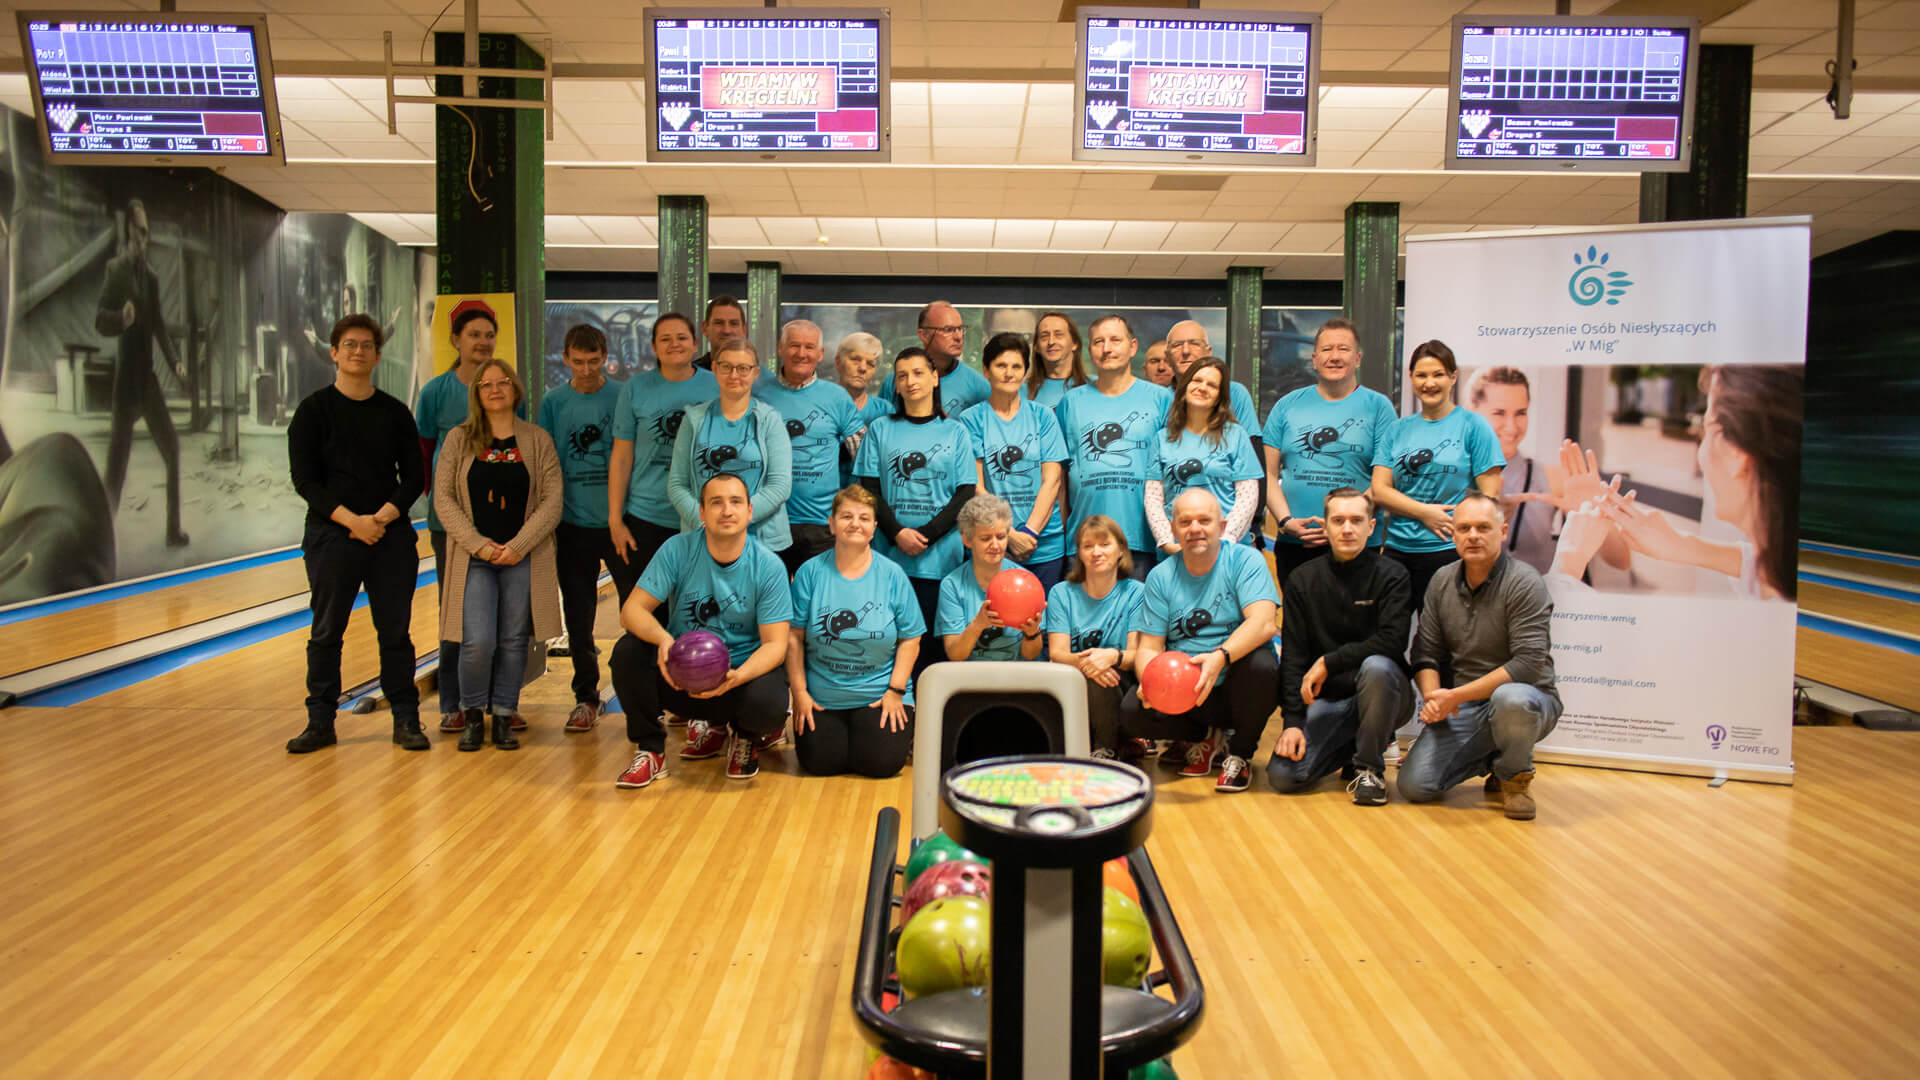 Grupowe zdjęcie członków stowarzyszenia podczas turnieju bowlingowego.